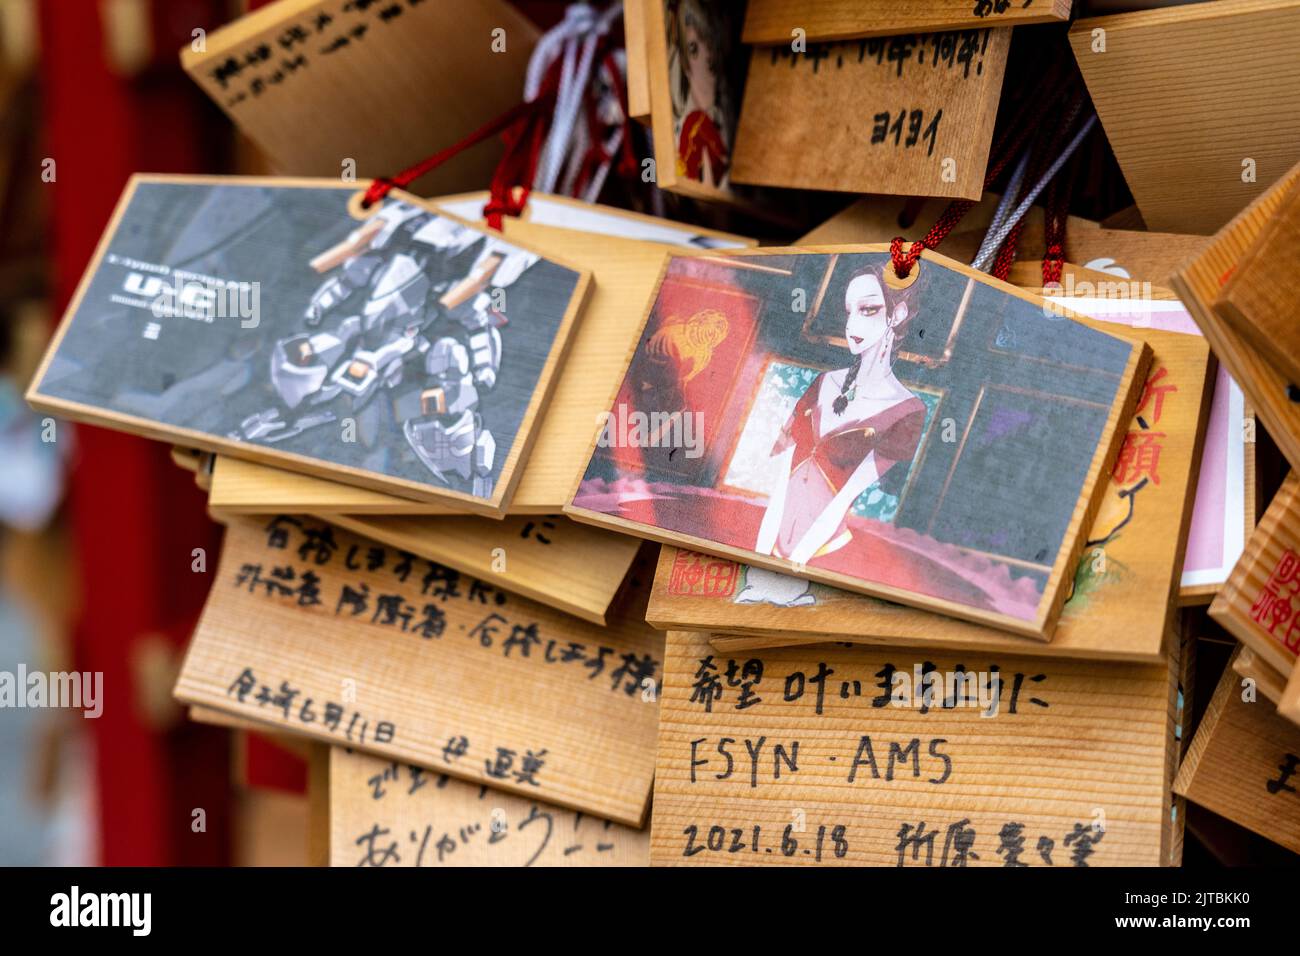 Personaggi giapponesi di anime e manga dipinti su placche di preghiera ema presso il Santuario di Kanda Myojin, un santuario Shintoista dedicato agli affari e ai technofili a Chiyoda, Tokyo, Giappone. Gli adoratori appendono le placche con i loro desideri, sogni o preghiere al tempio. Foto Stock